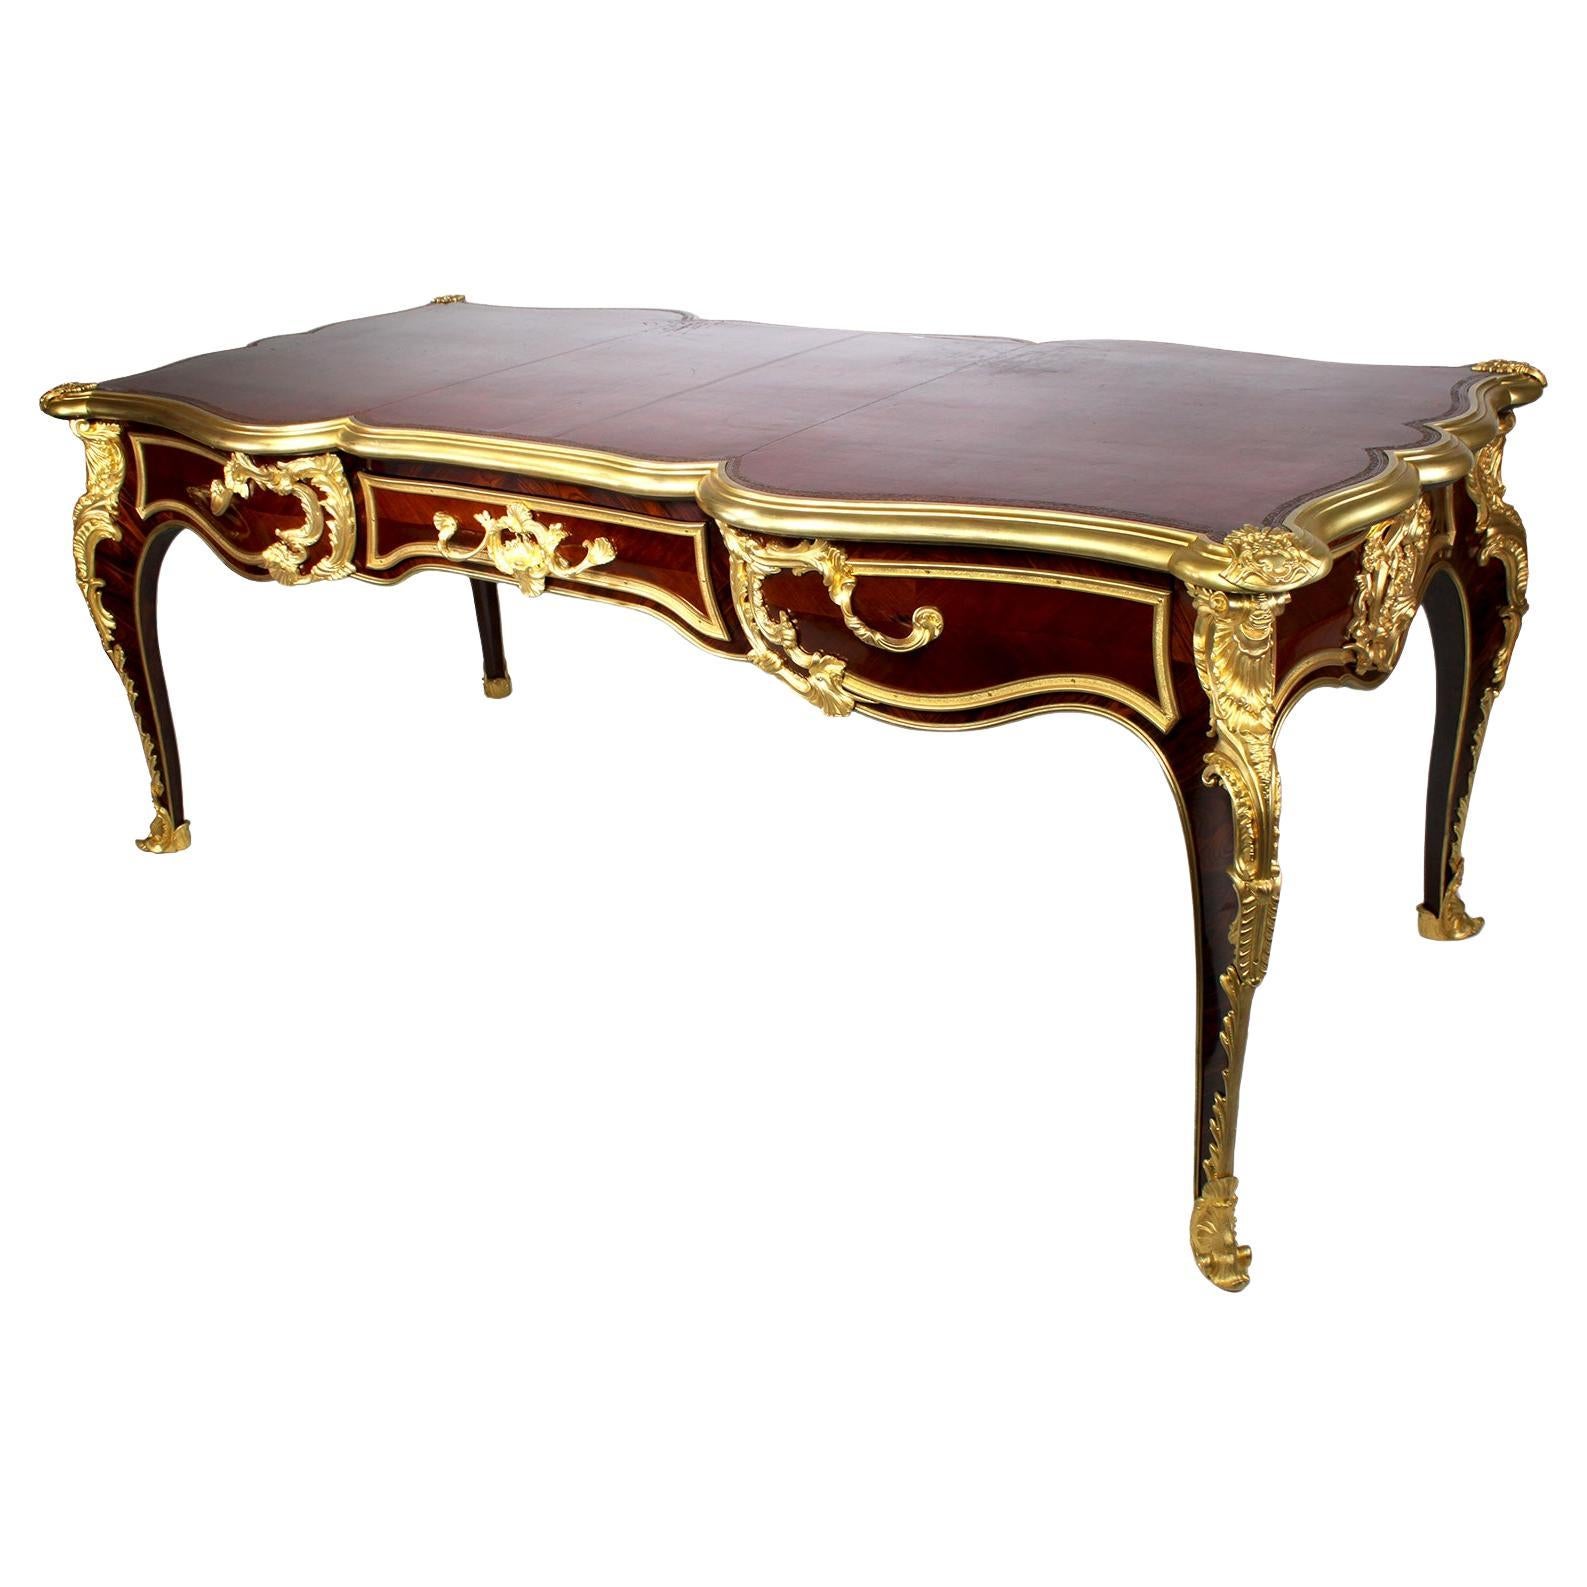 Bureau-plat de bureau français du 19ème siècle de style Louis XV monté en bronze doré Paul Sormani 